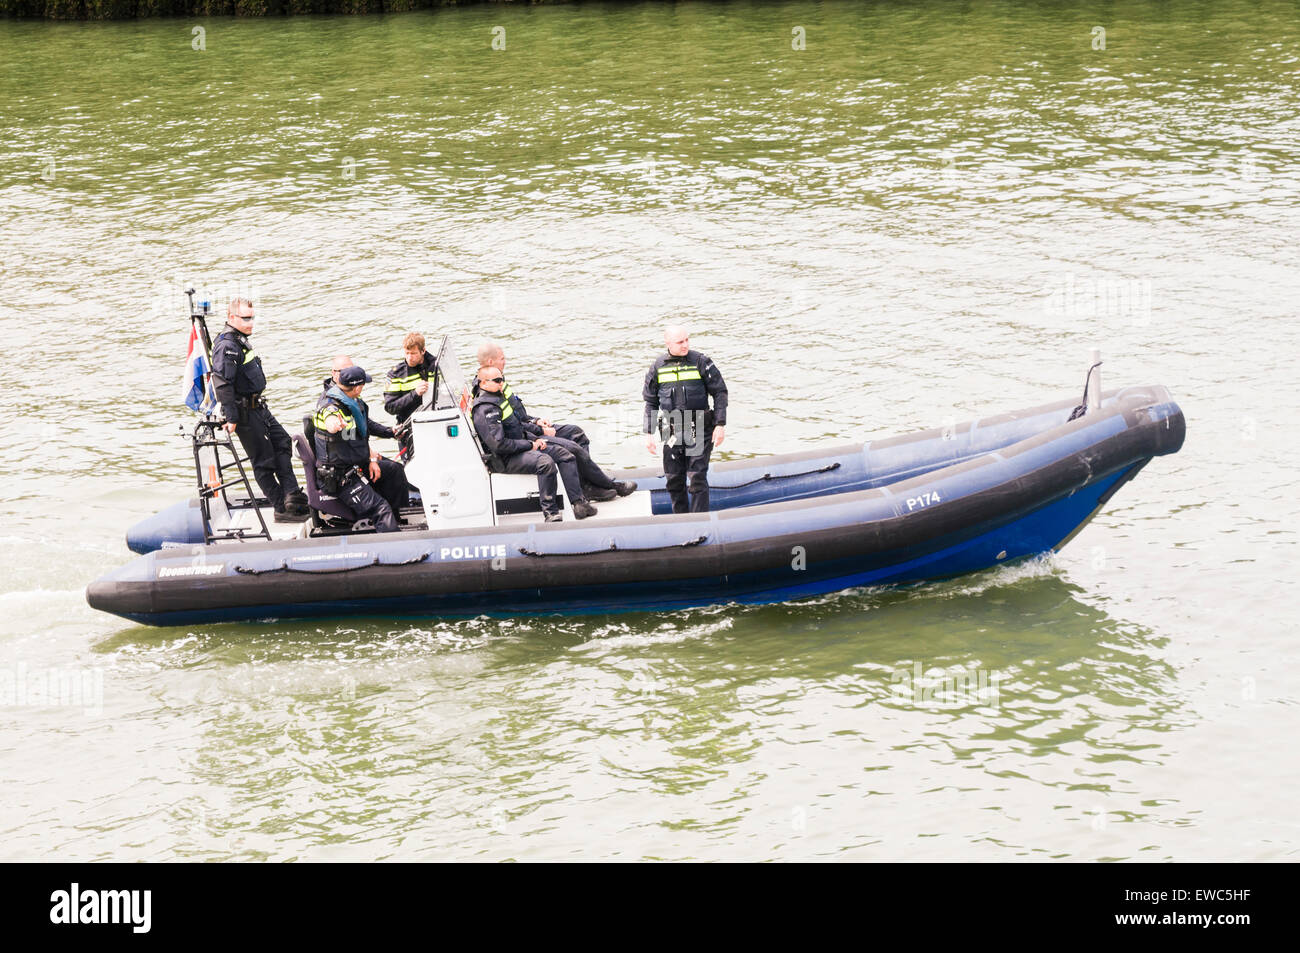 Niederlande-Polizei (Politie) in einer Rippe auf einem marine-Event. Stockfoto